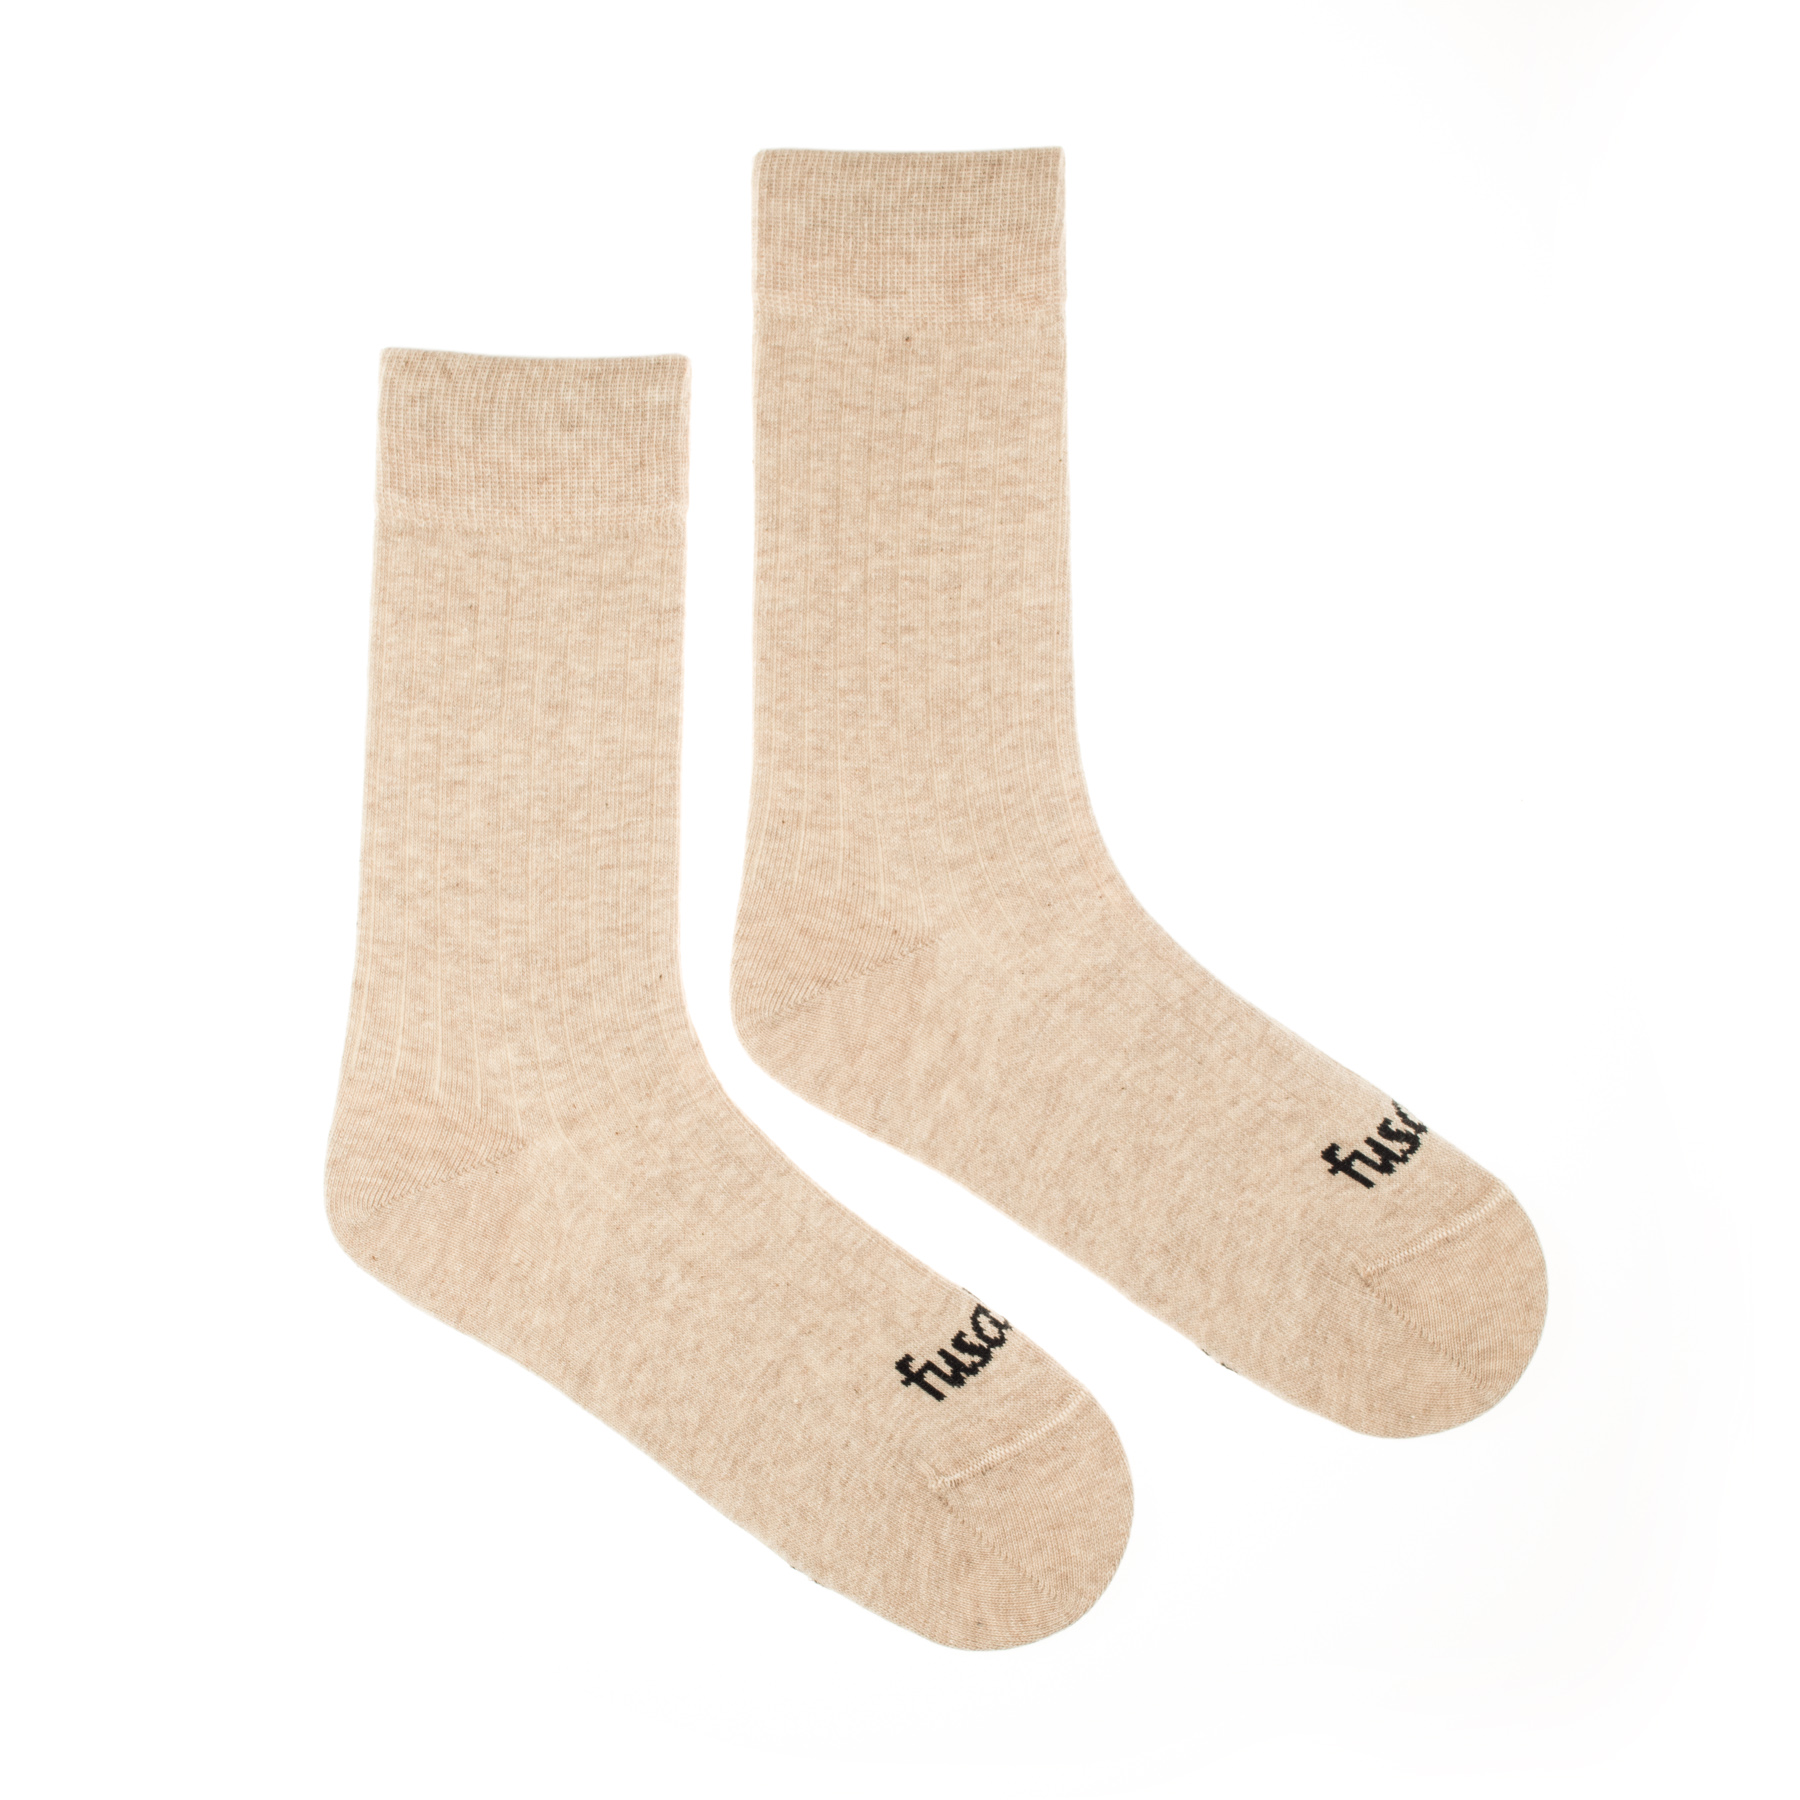 Ponožky Rebro béžové